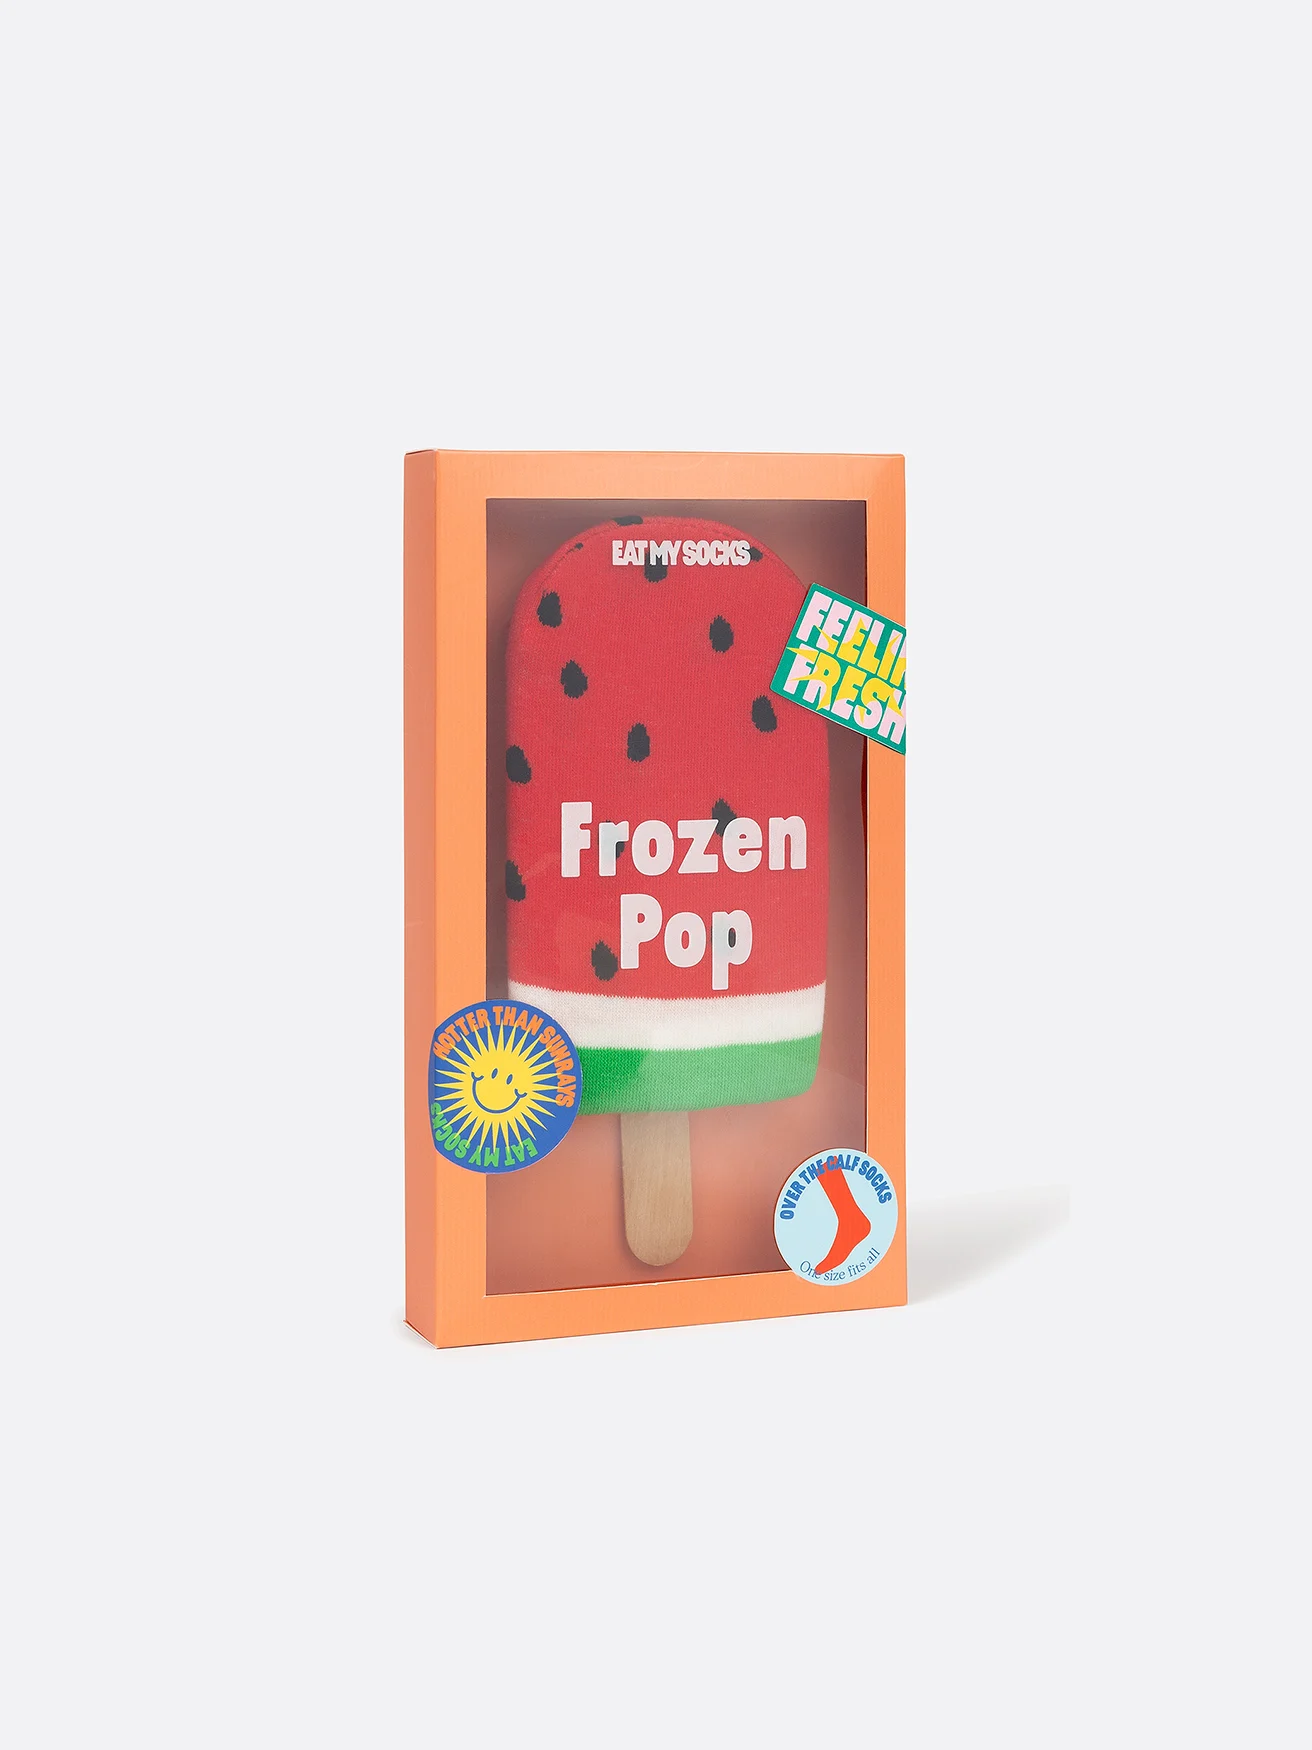 Eat My Socks - Frozen Pop - Watermelon - One size - Gadgets